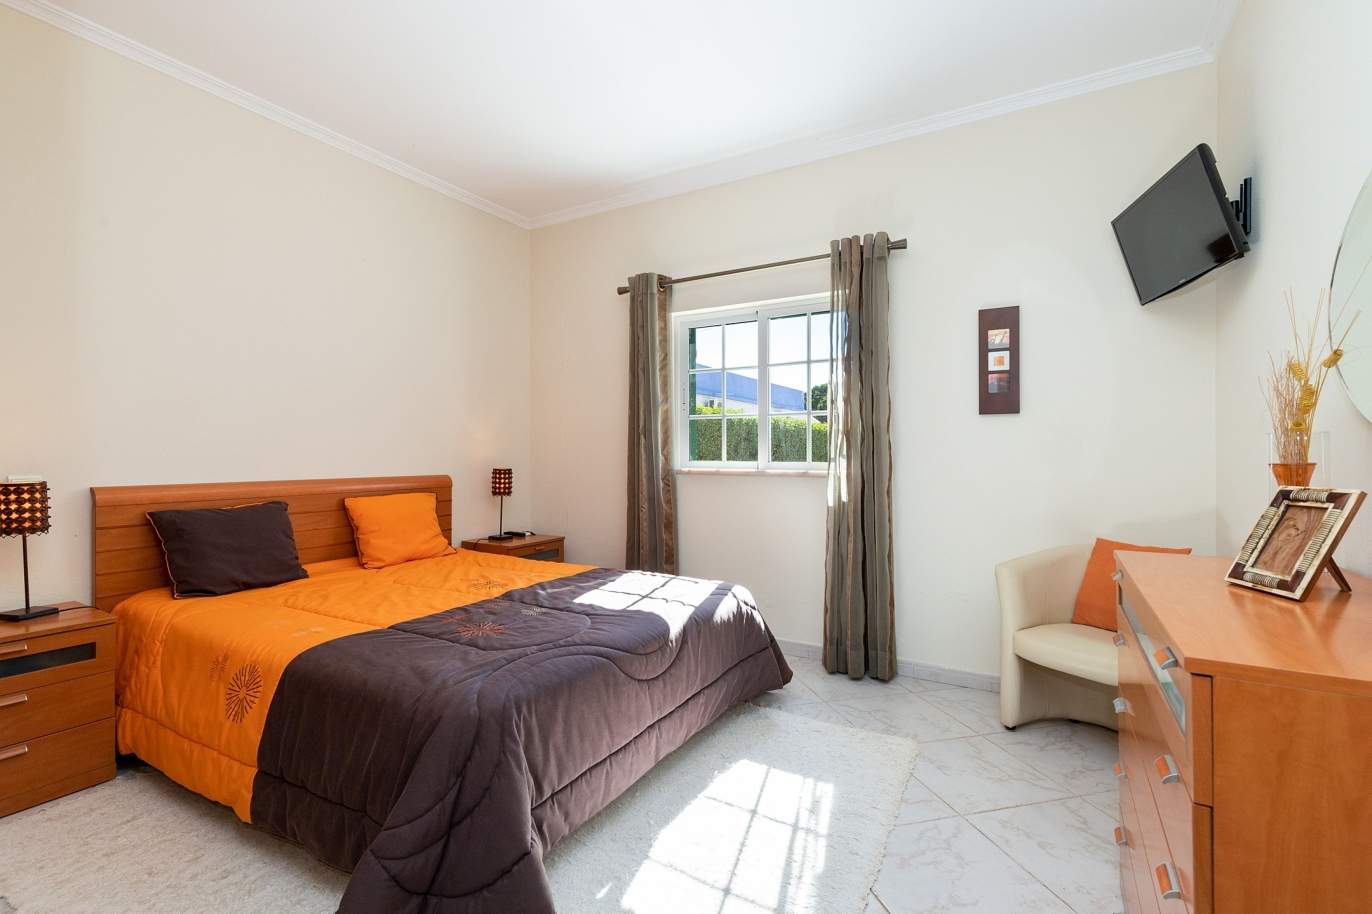 4 bedroom villa with pool and garden, Albufeira, Algarve_180569